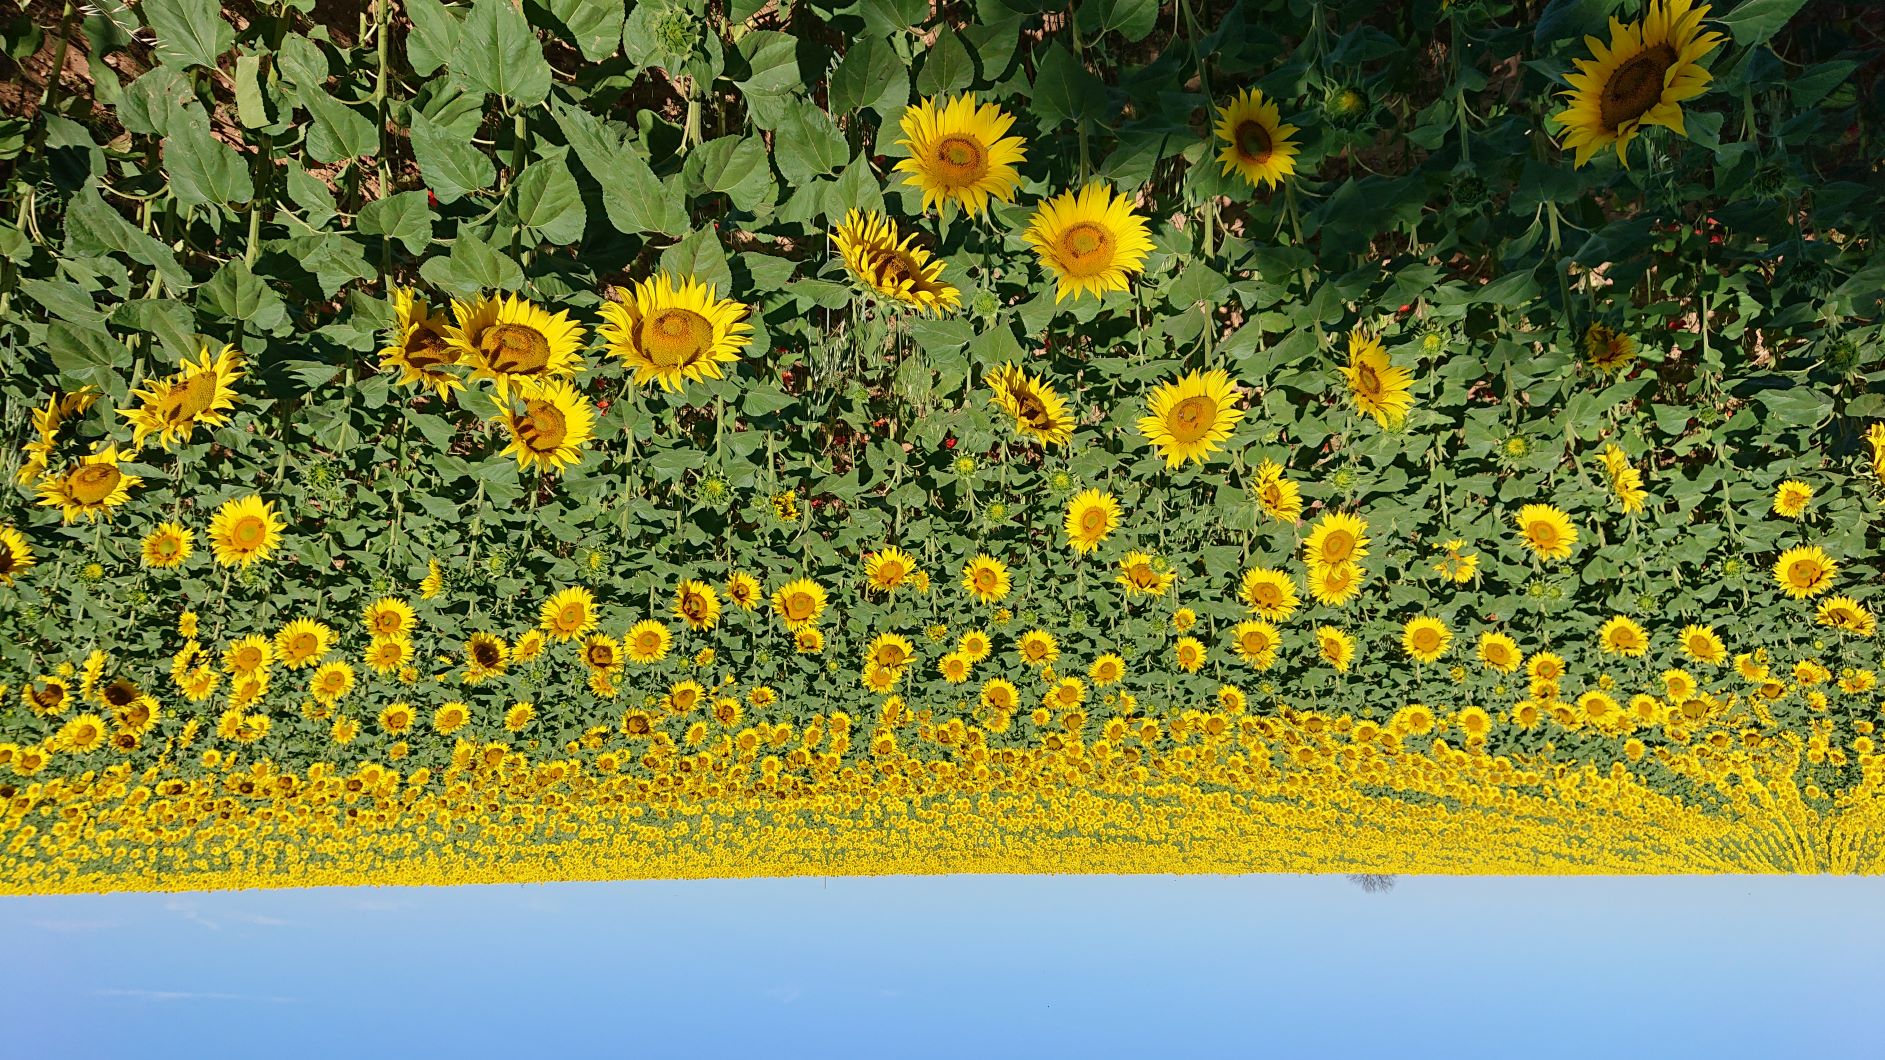 723-sunflowerjpg.jpg